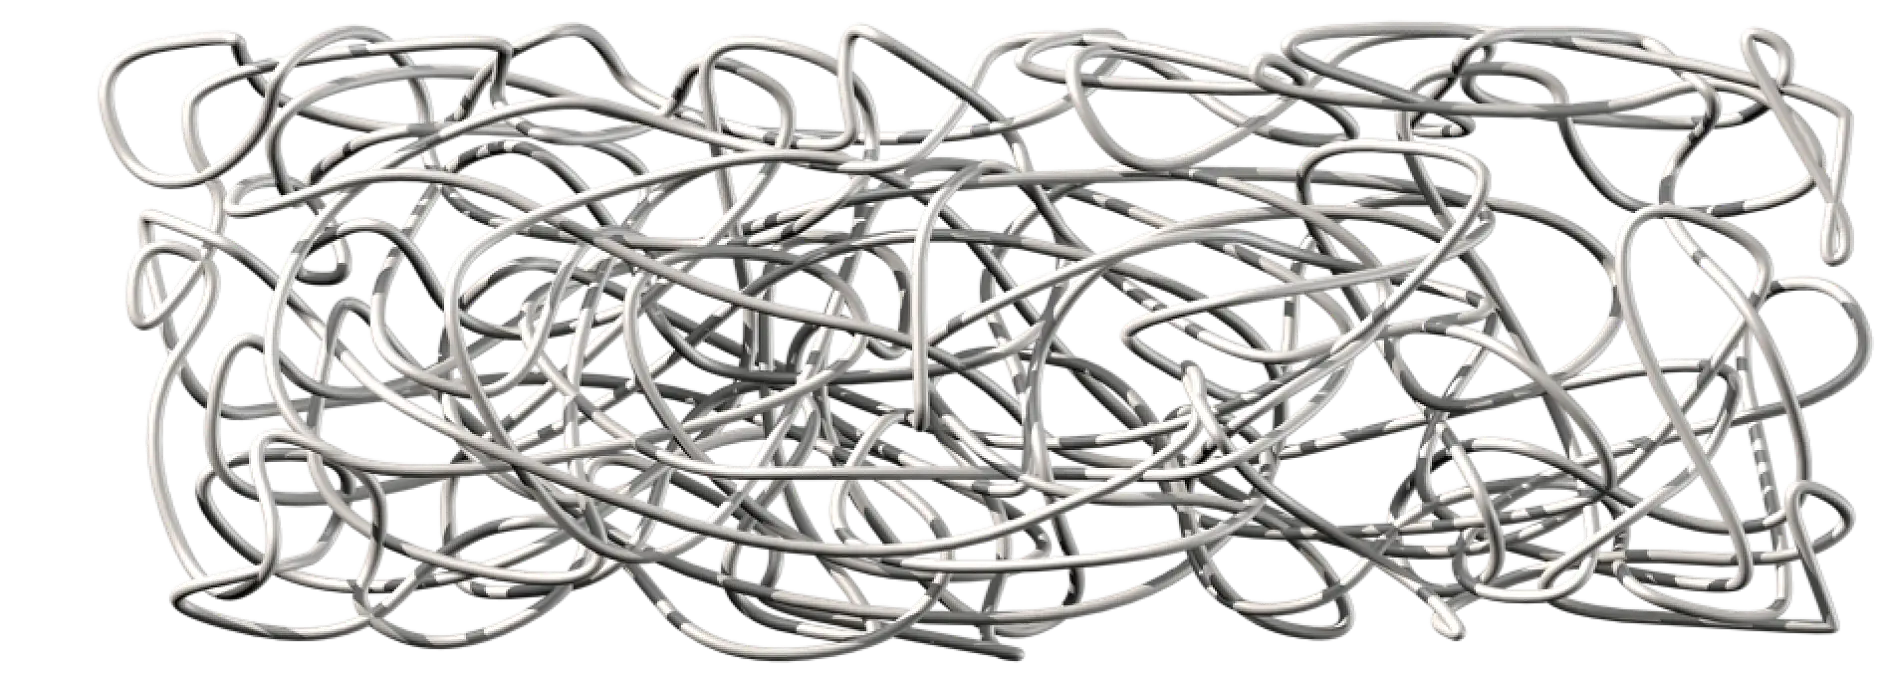 Naturkautschuk besteht aus extrem langen Polymerketten, die ineinander verheddert, nicht verbunden sind